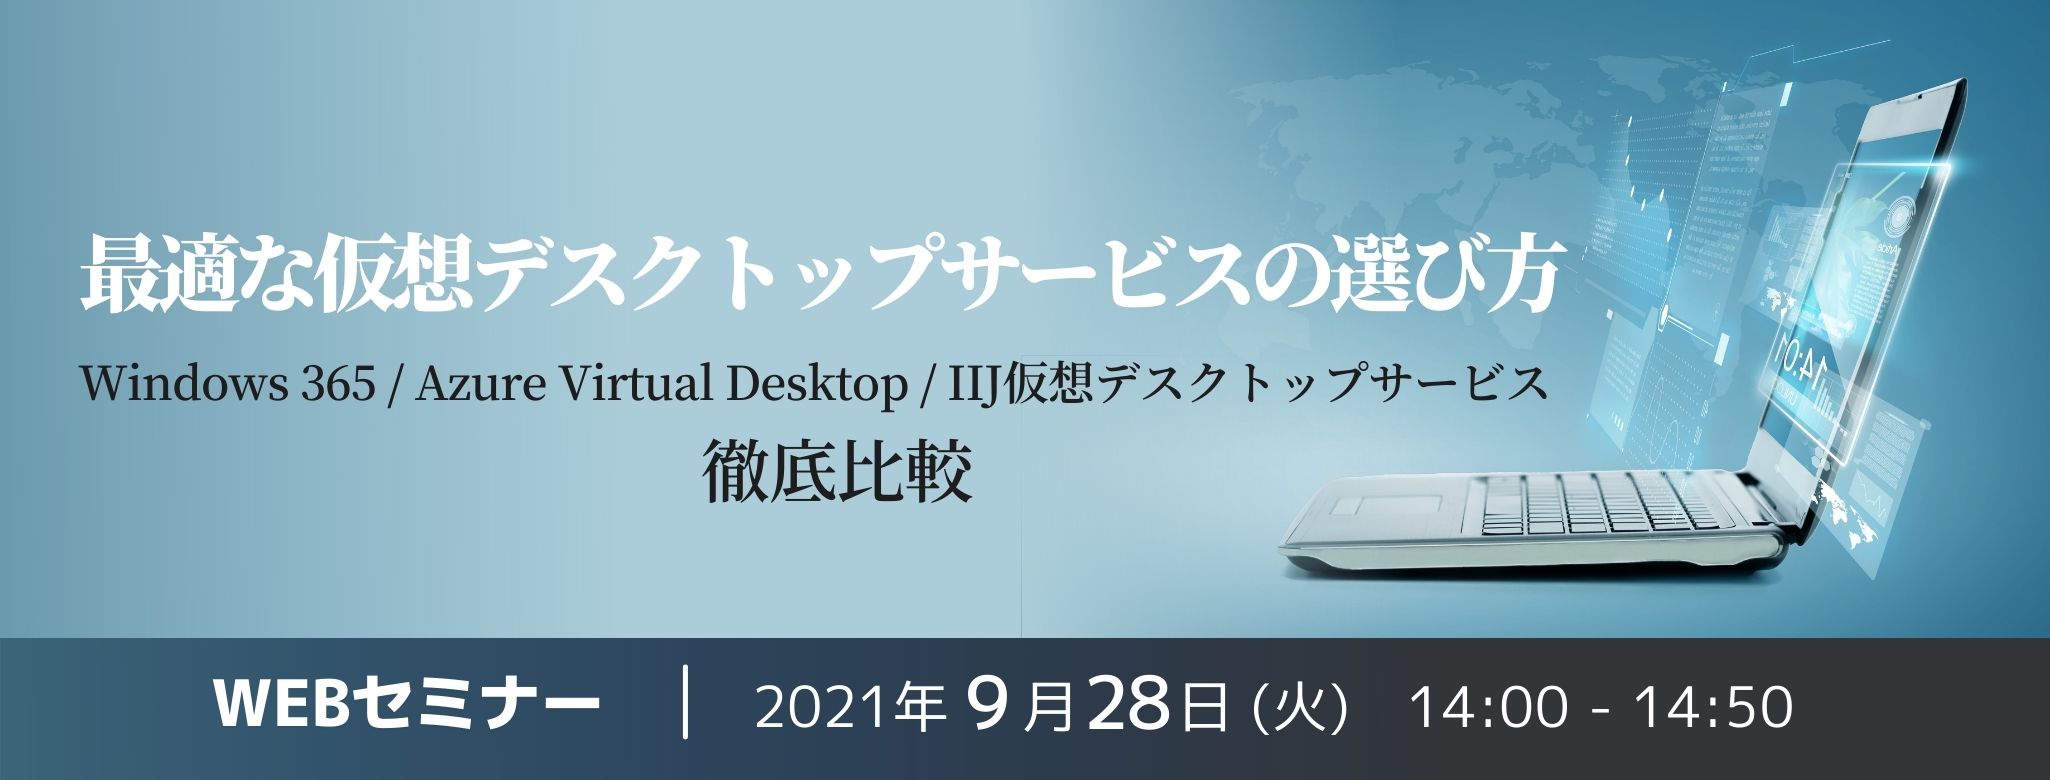  最適な仮想デスクトップサービスの選び方～Windows 365 / Azure Virtual Desktop / IIJ仮想デスクトップサービス 徹底比較～ 